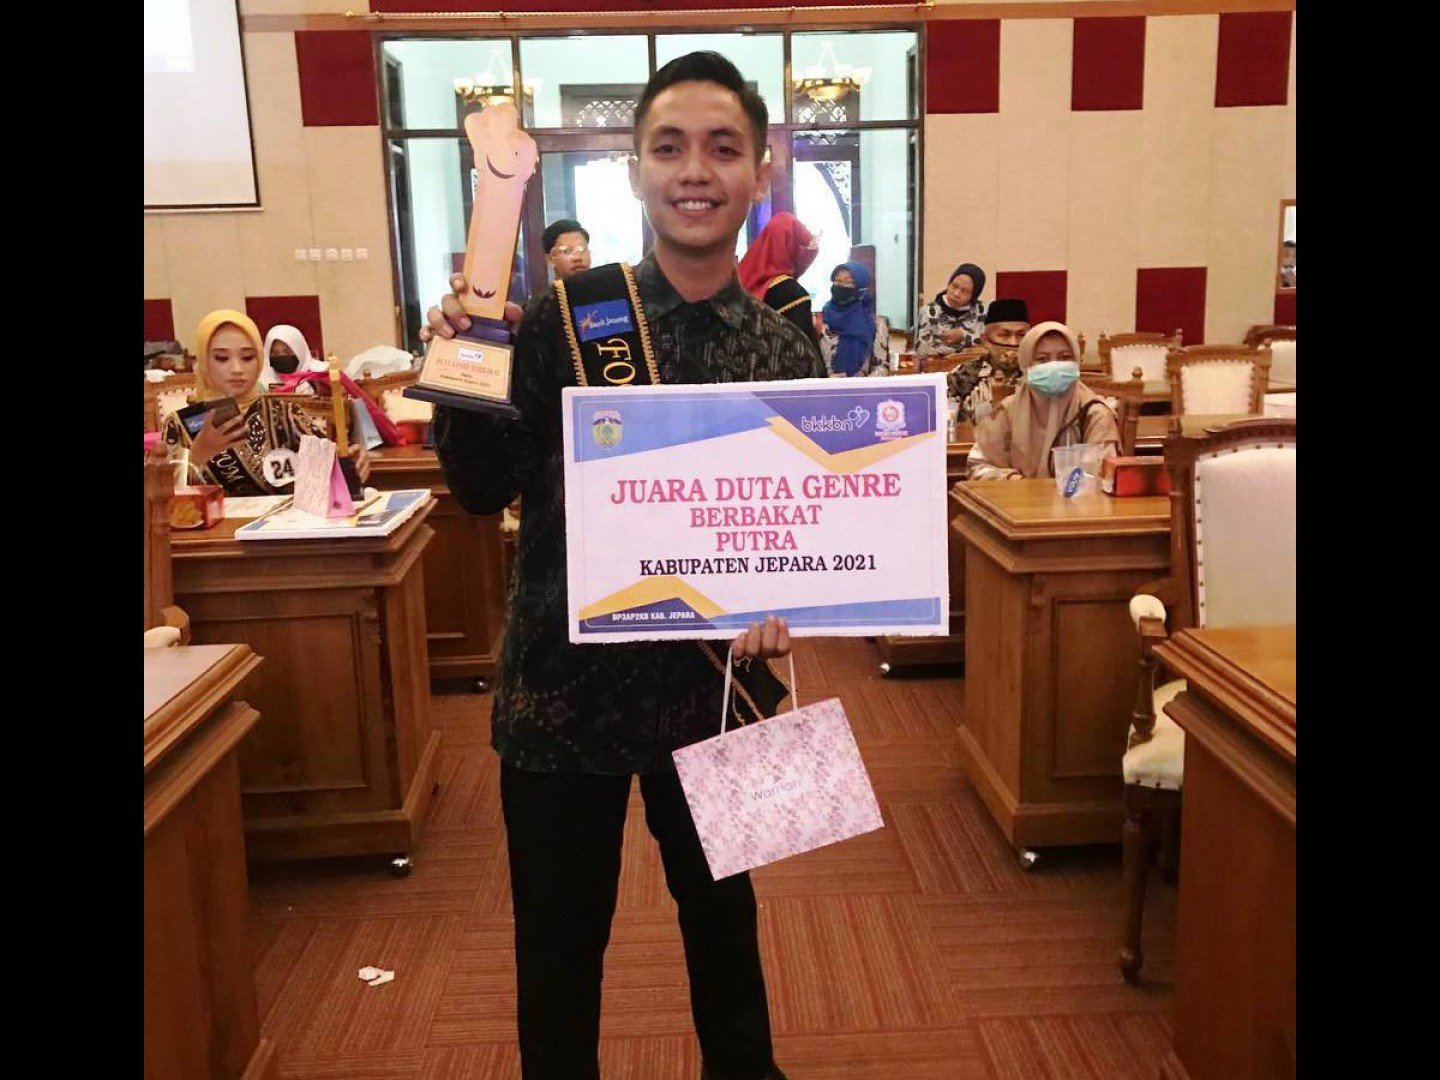 Mahasiswa IAIN Kudus Raih Juara Duta Genre Berbakat Putra Kabupaten Jepara 2021